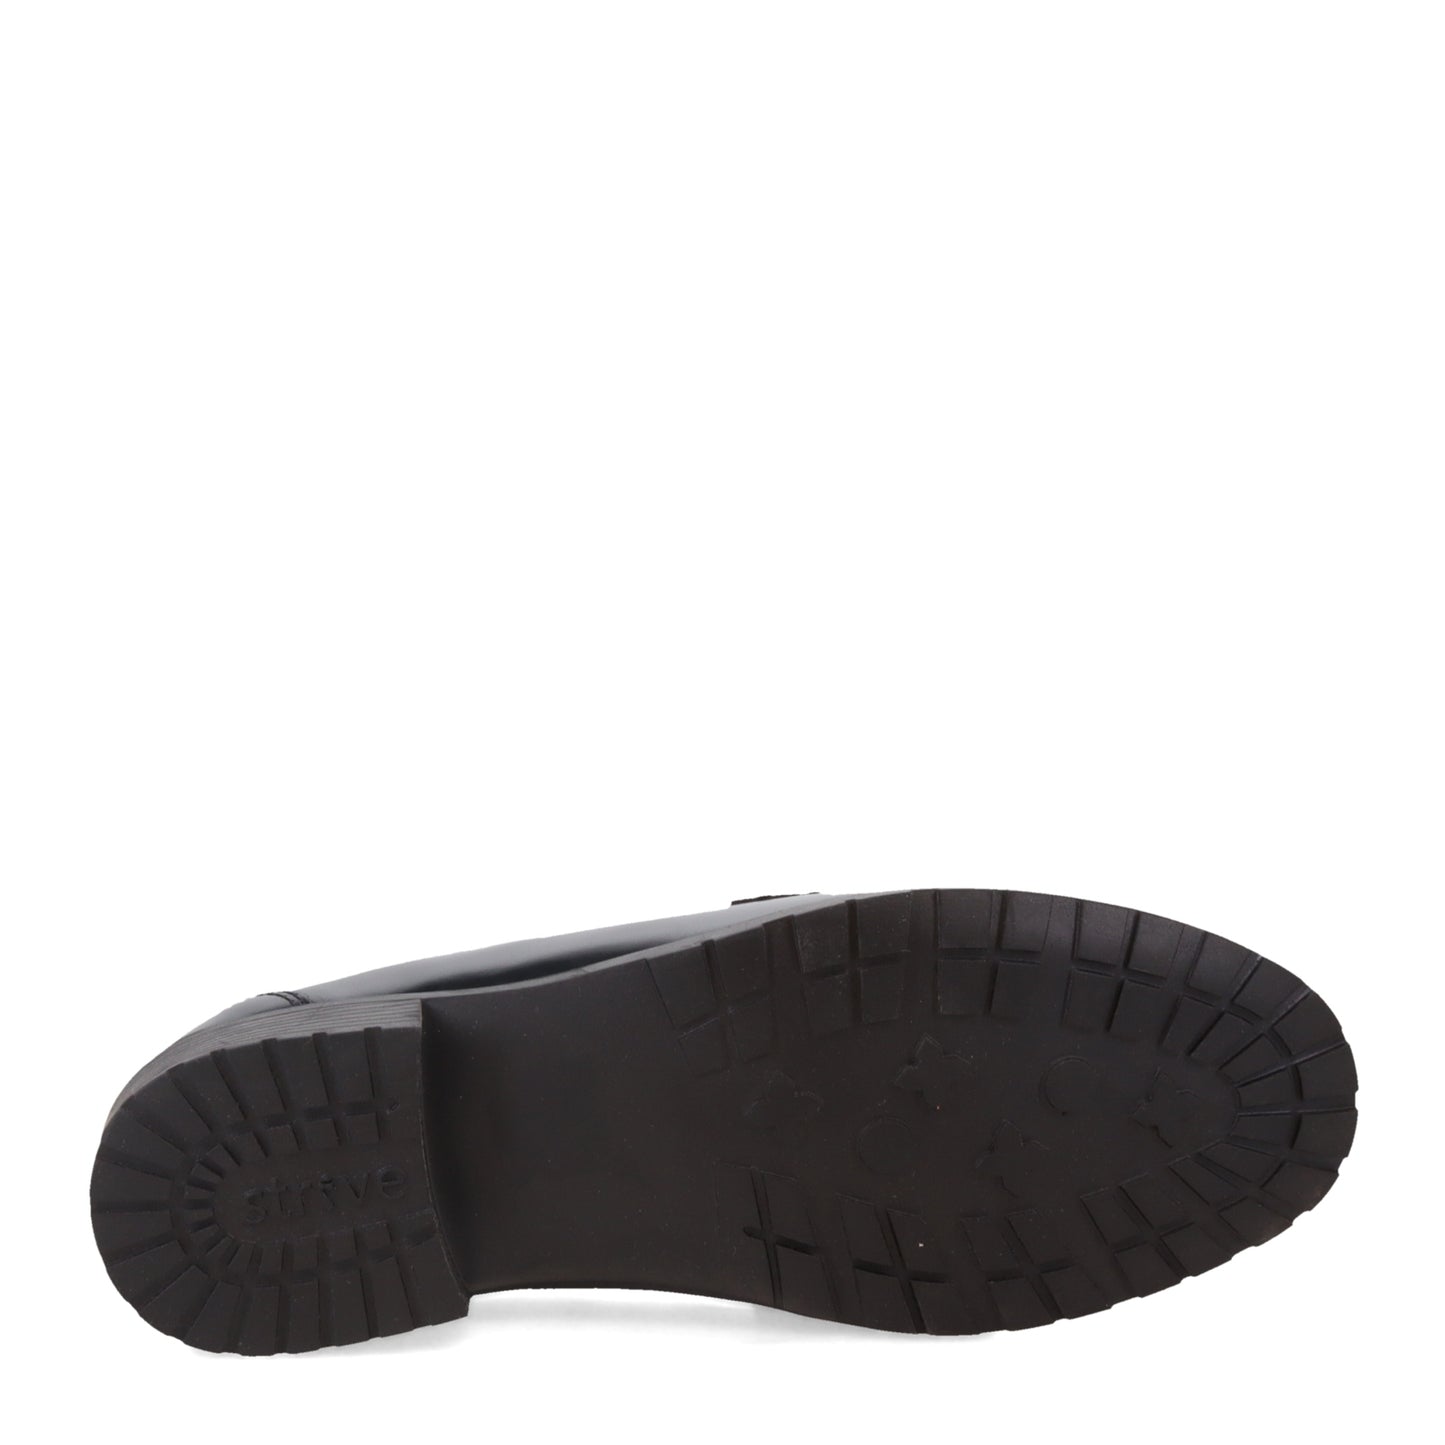 Peltz Shoes  Women's Strive Paris Loafer Black Patent PARIS-BLACKP